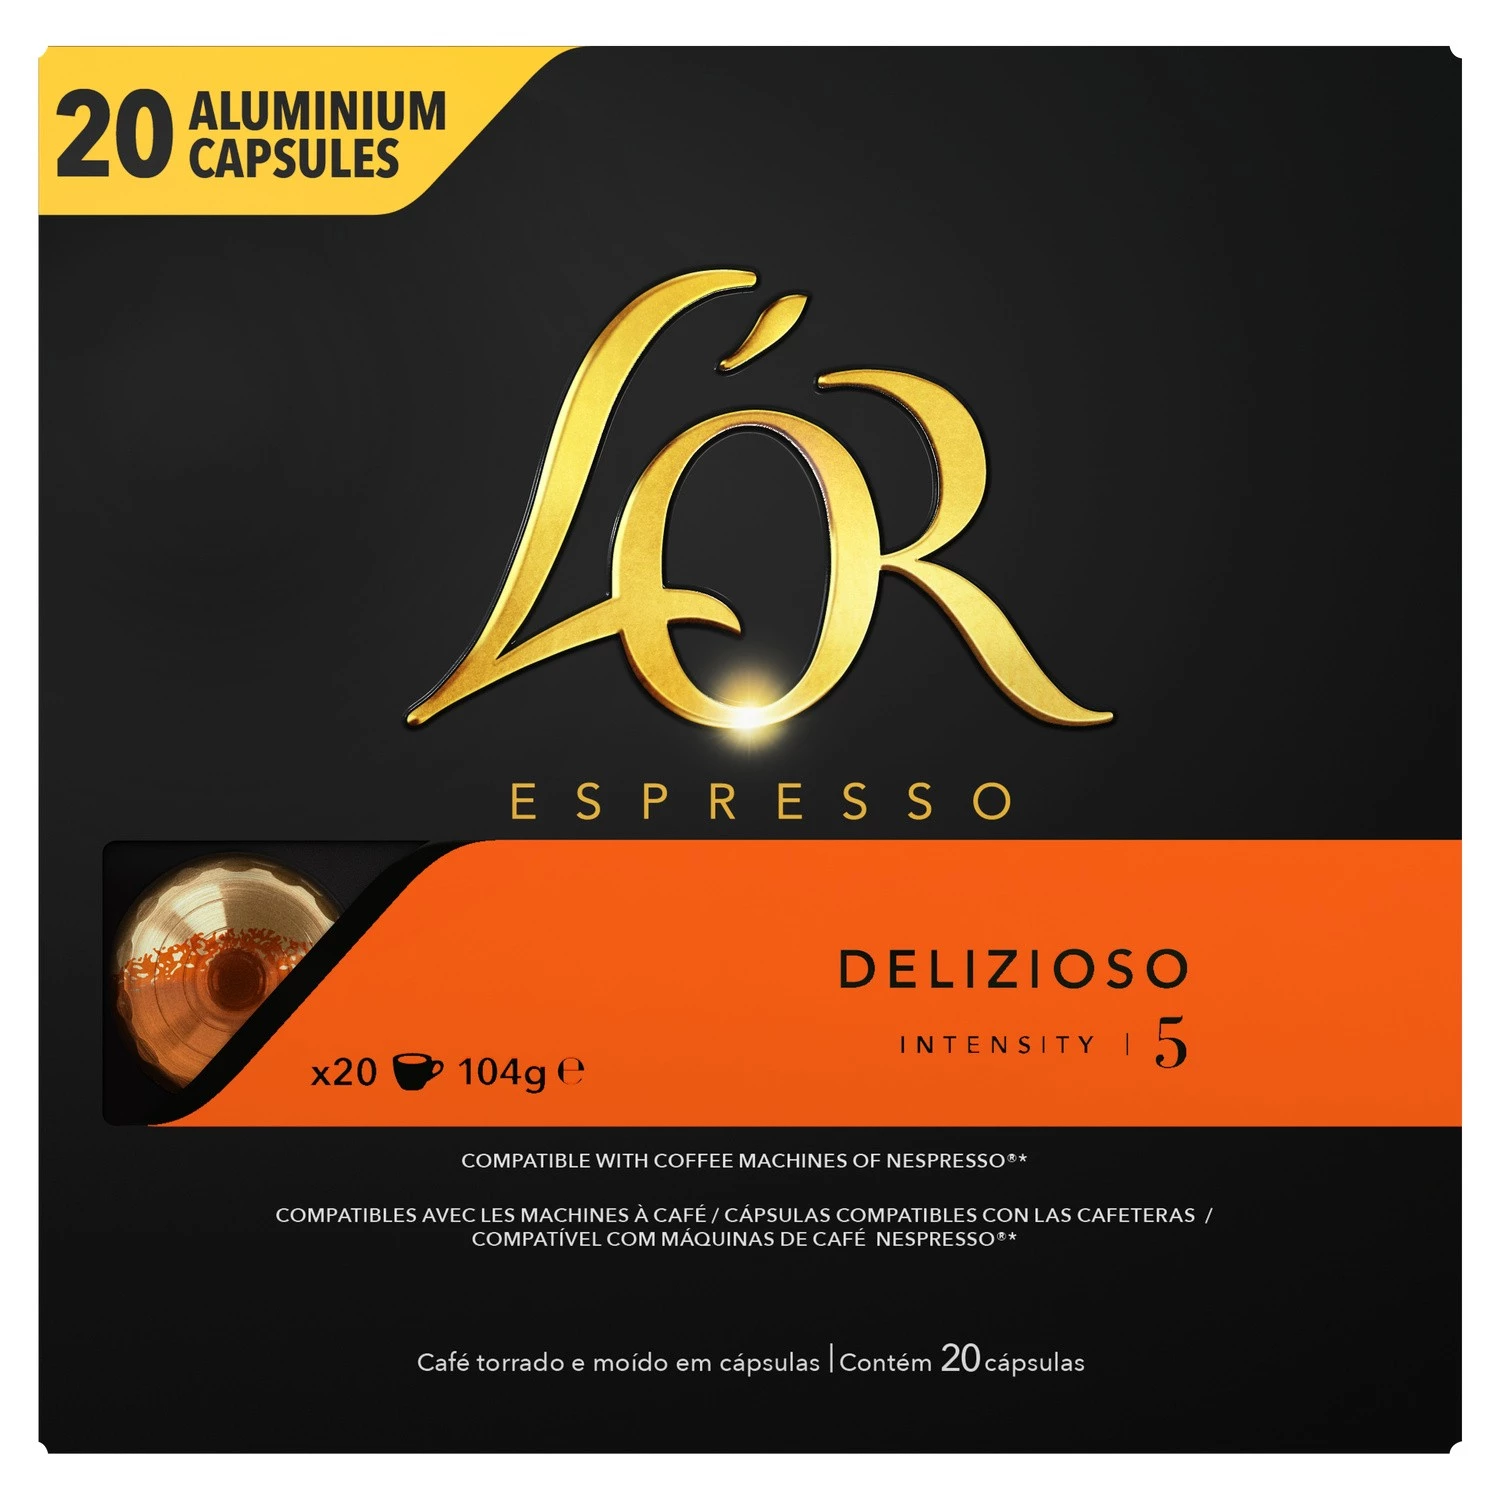 Café Délizioso X20 капсулы алюминиевые 104г - L'OR